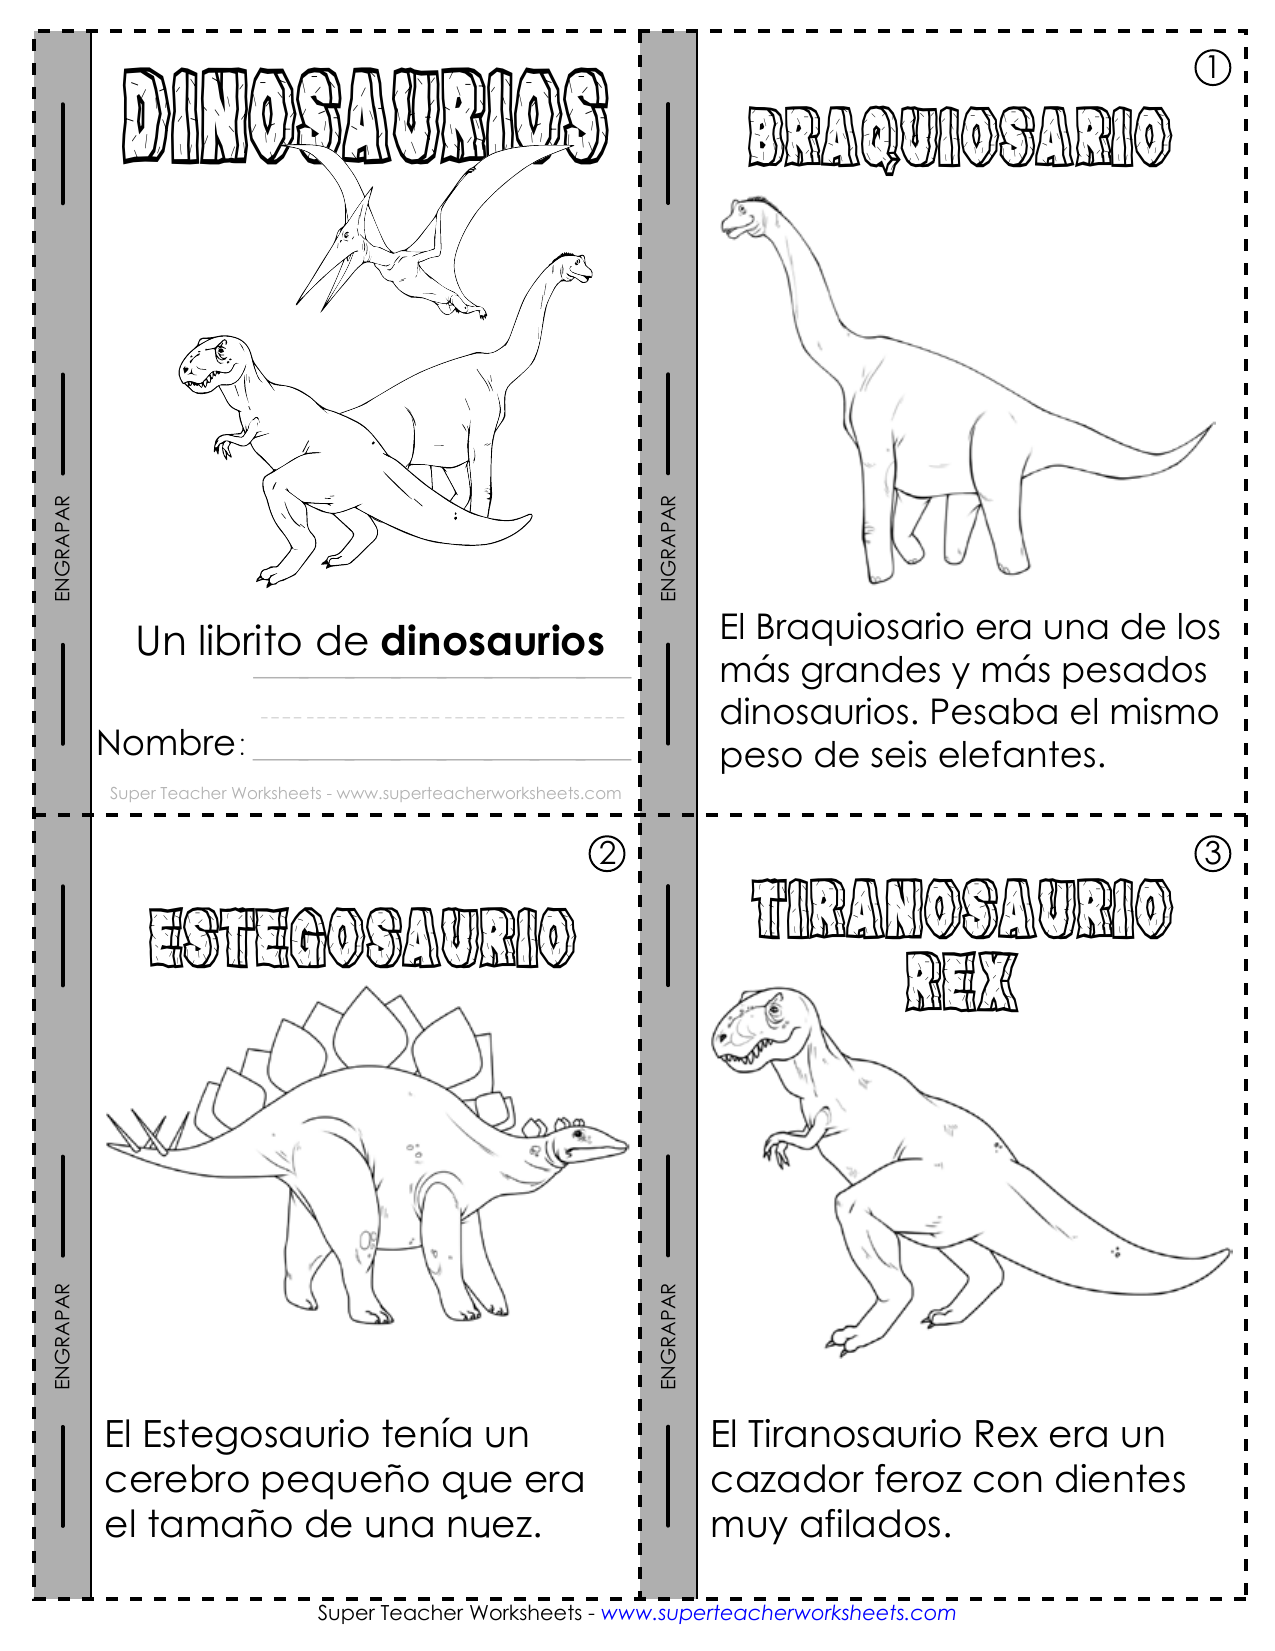 dinosaurs-mini-book DINOS SP